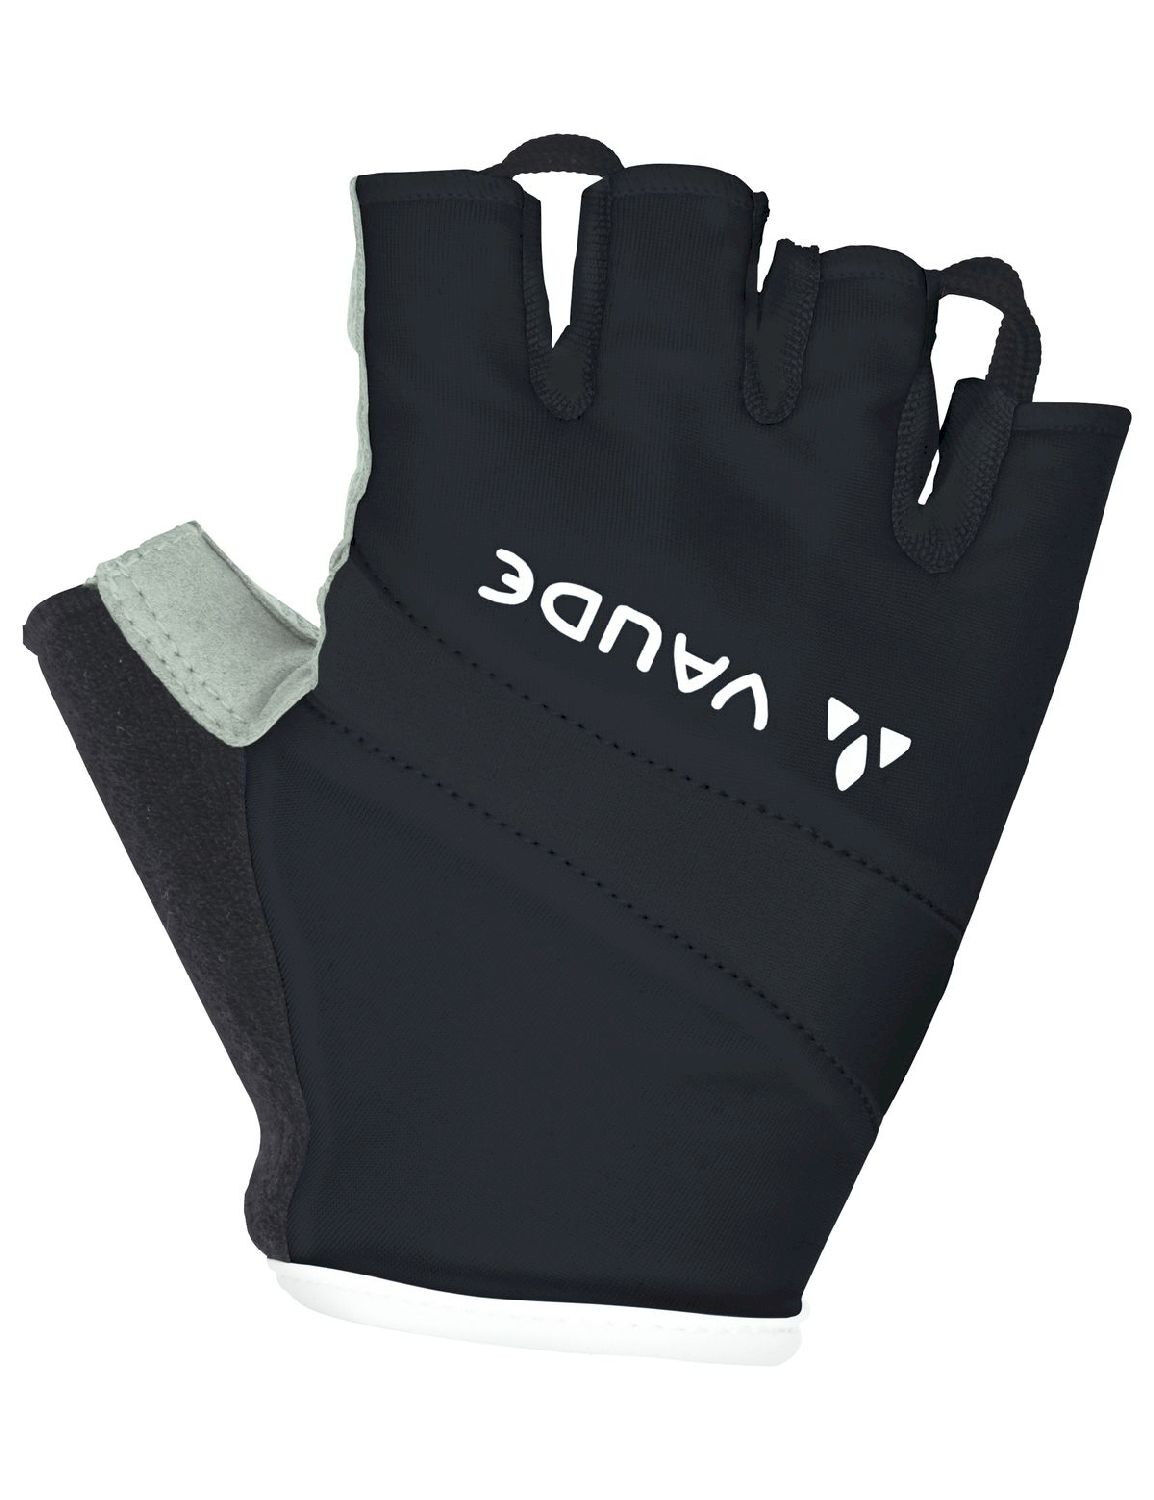 Vaude Active Gloves - Kurzfingerhandschuhe - Damen